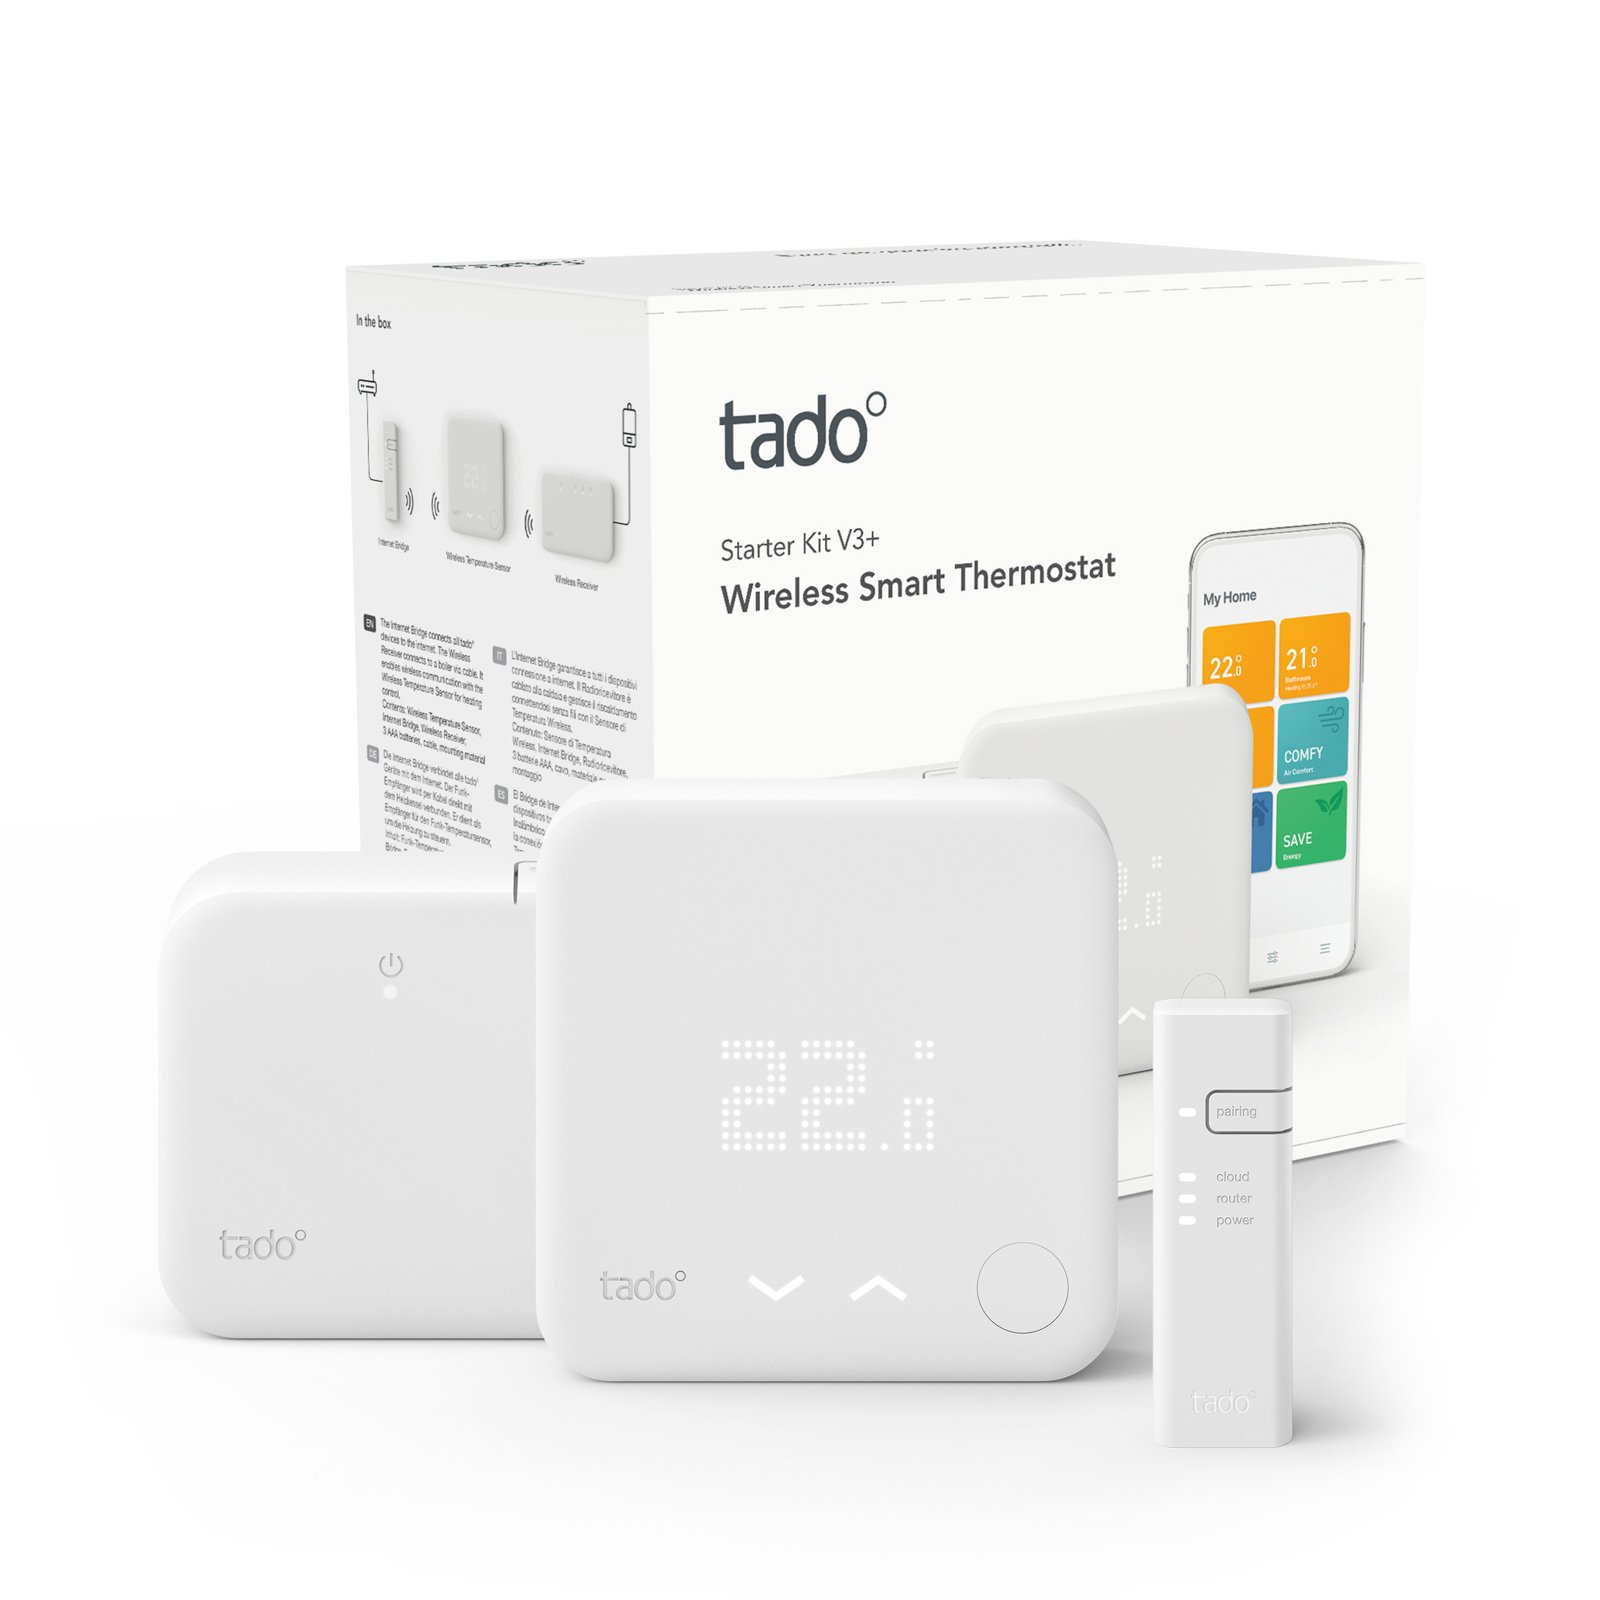 tado° smart thermostat starter kit V3+, wireless